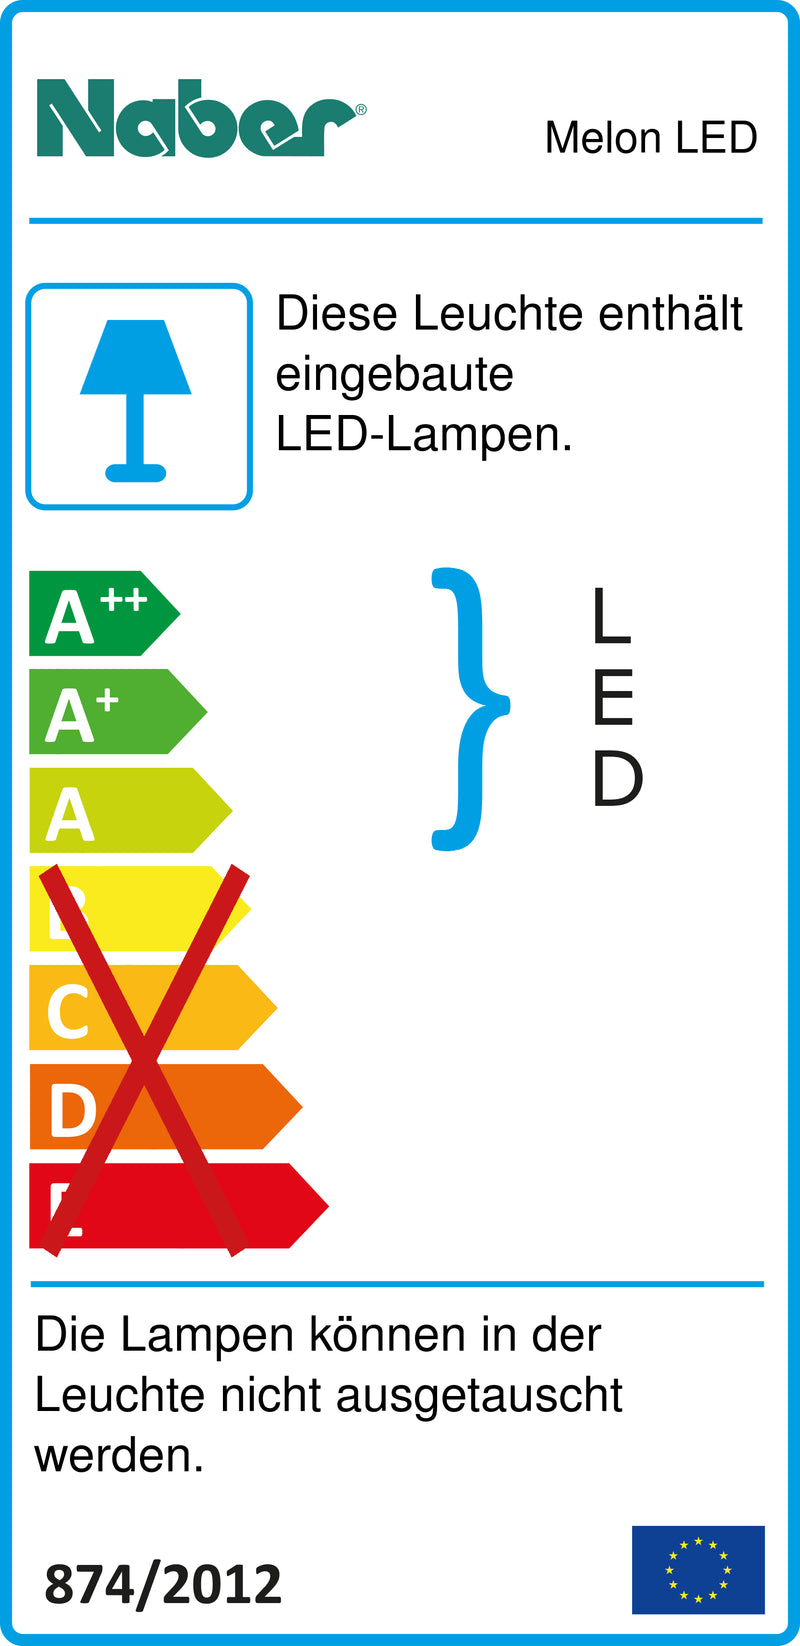 E-Label zu Zeichnung zu Melon LED als Variante 3 LED Strahler, L 580 mm, 4,5 W, edelstahlfarbig von Naber GmbH in der Kategorie Lichttechnik in Österreich auf conceptshop.at